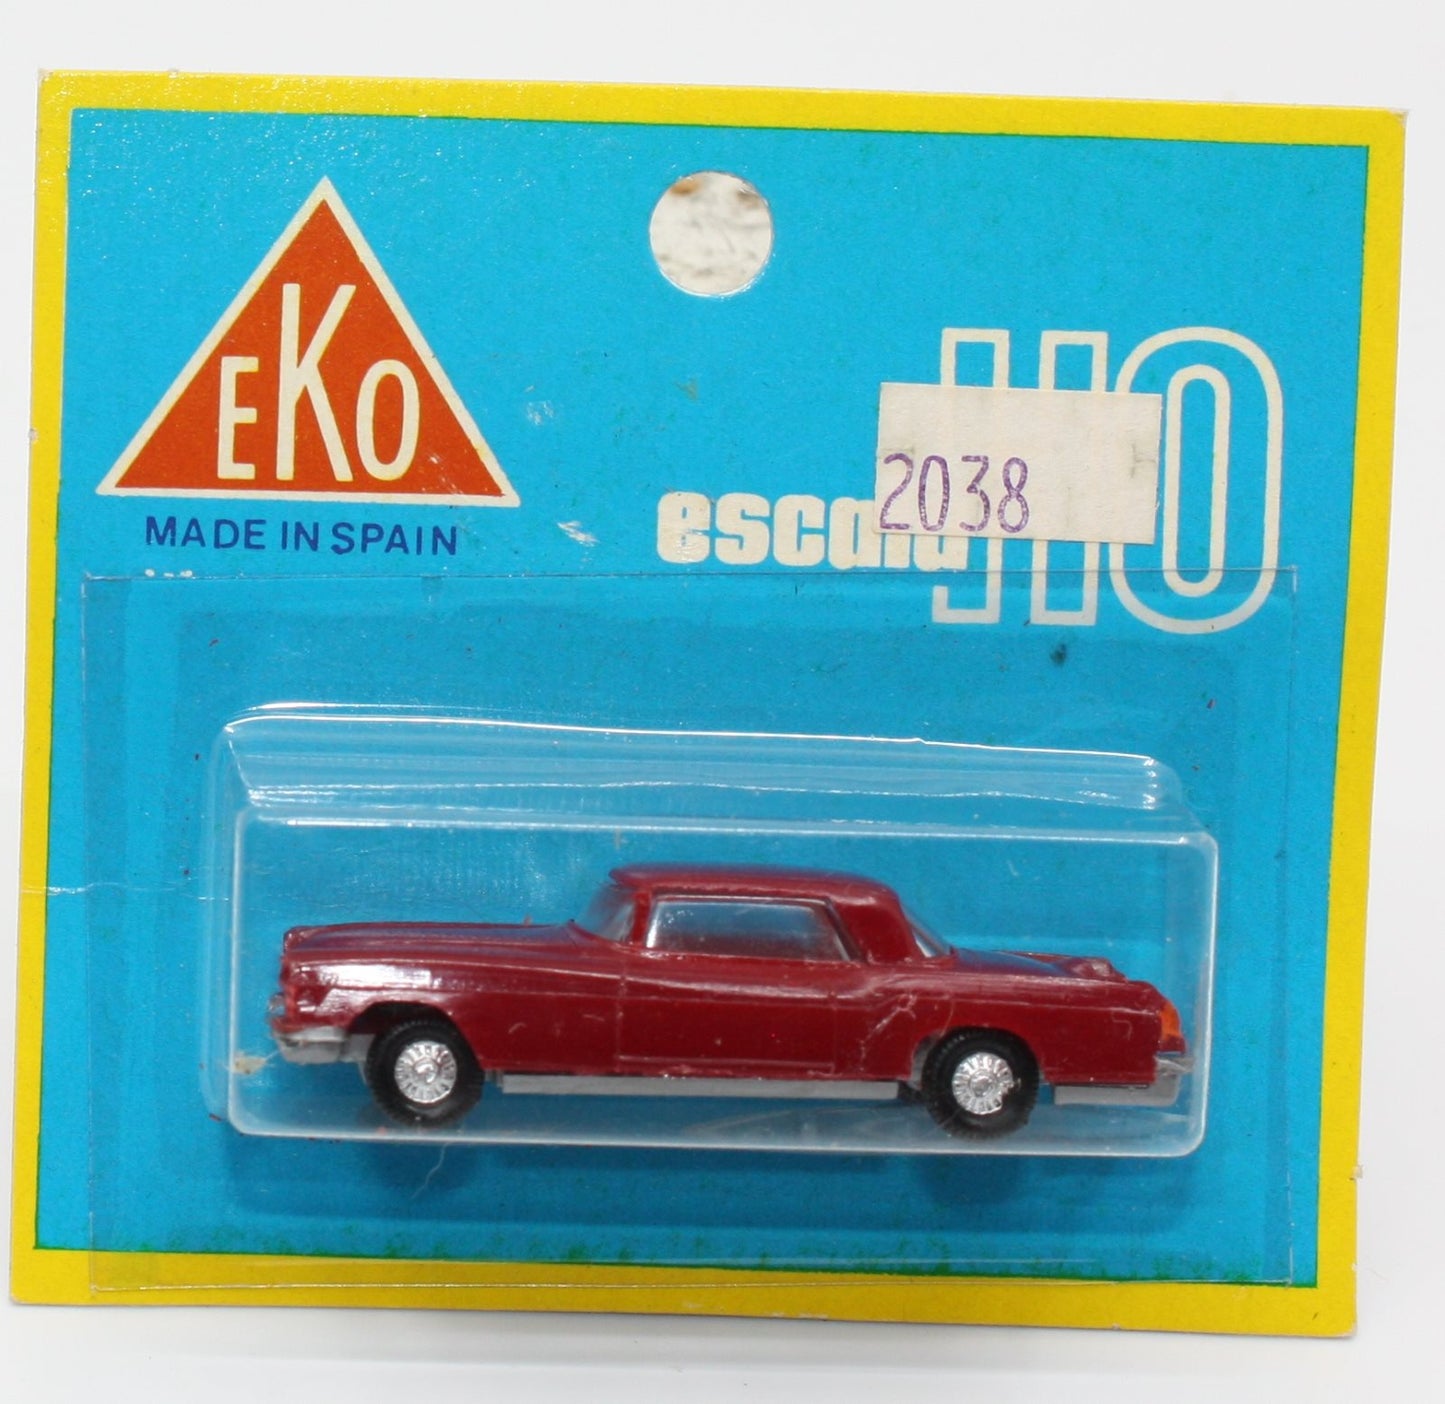 EKO 2038 HO Lincoln Continental